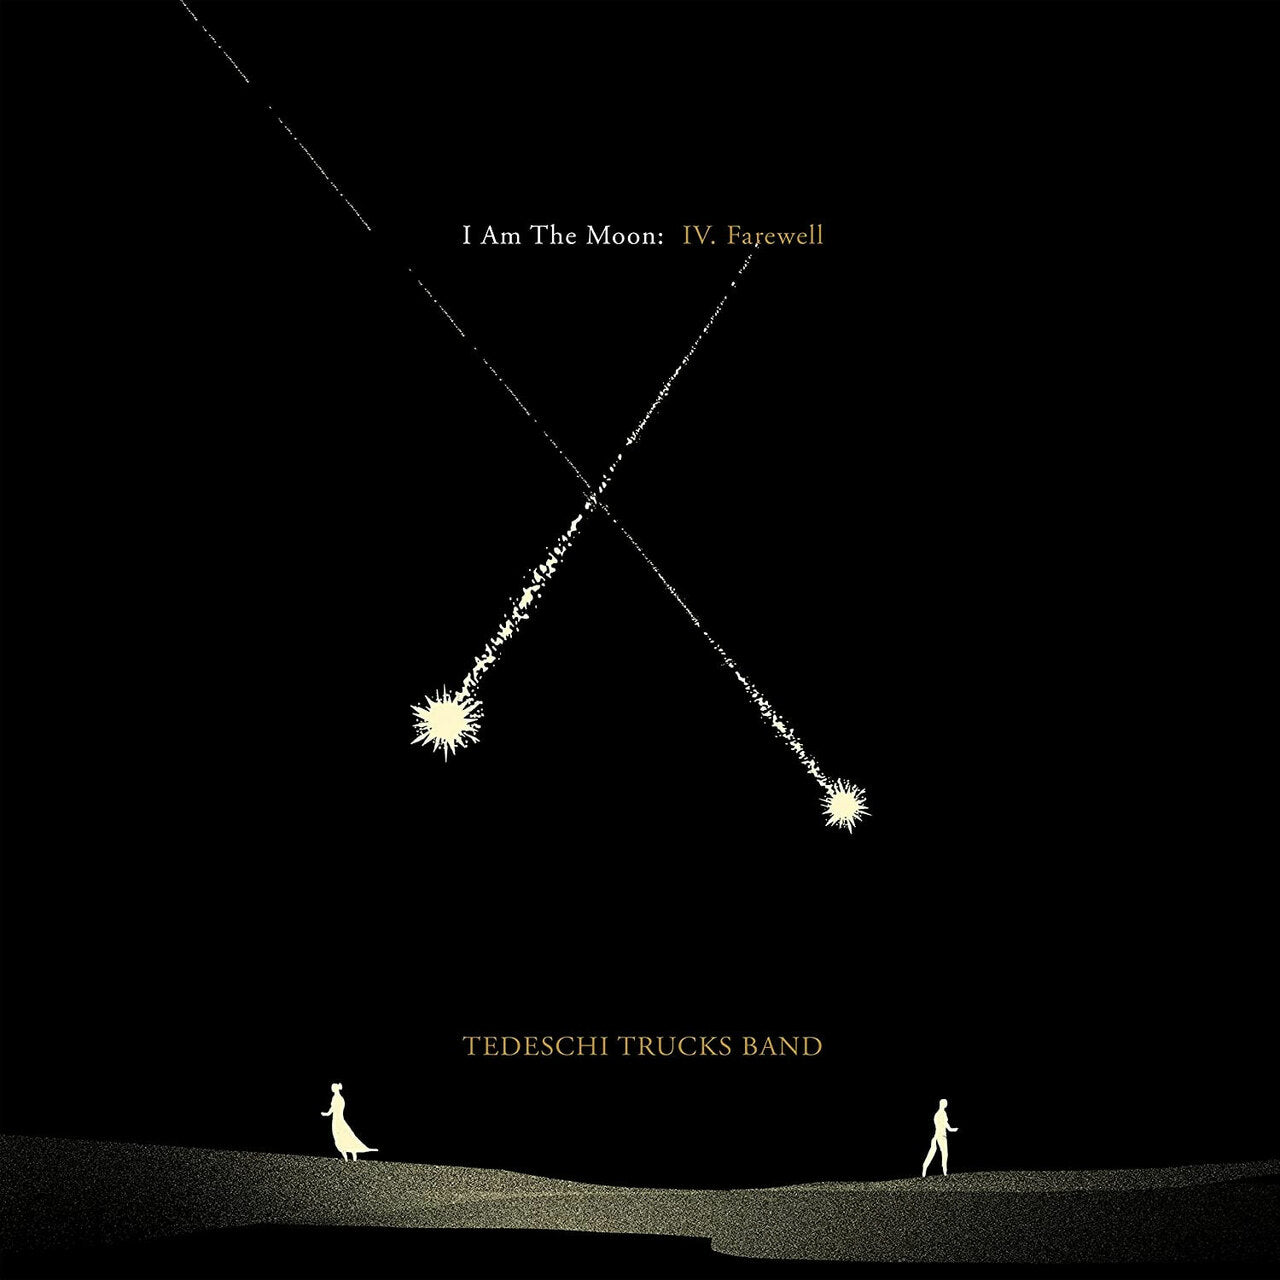 TEDESCHI TRUCKS BAND - I AM THE MOON: IV. FAREWELL Vinyl LP